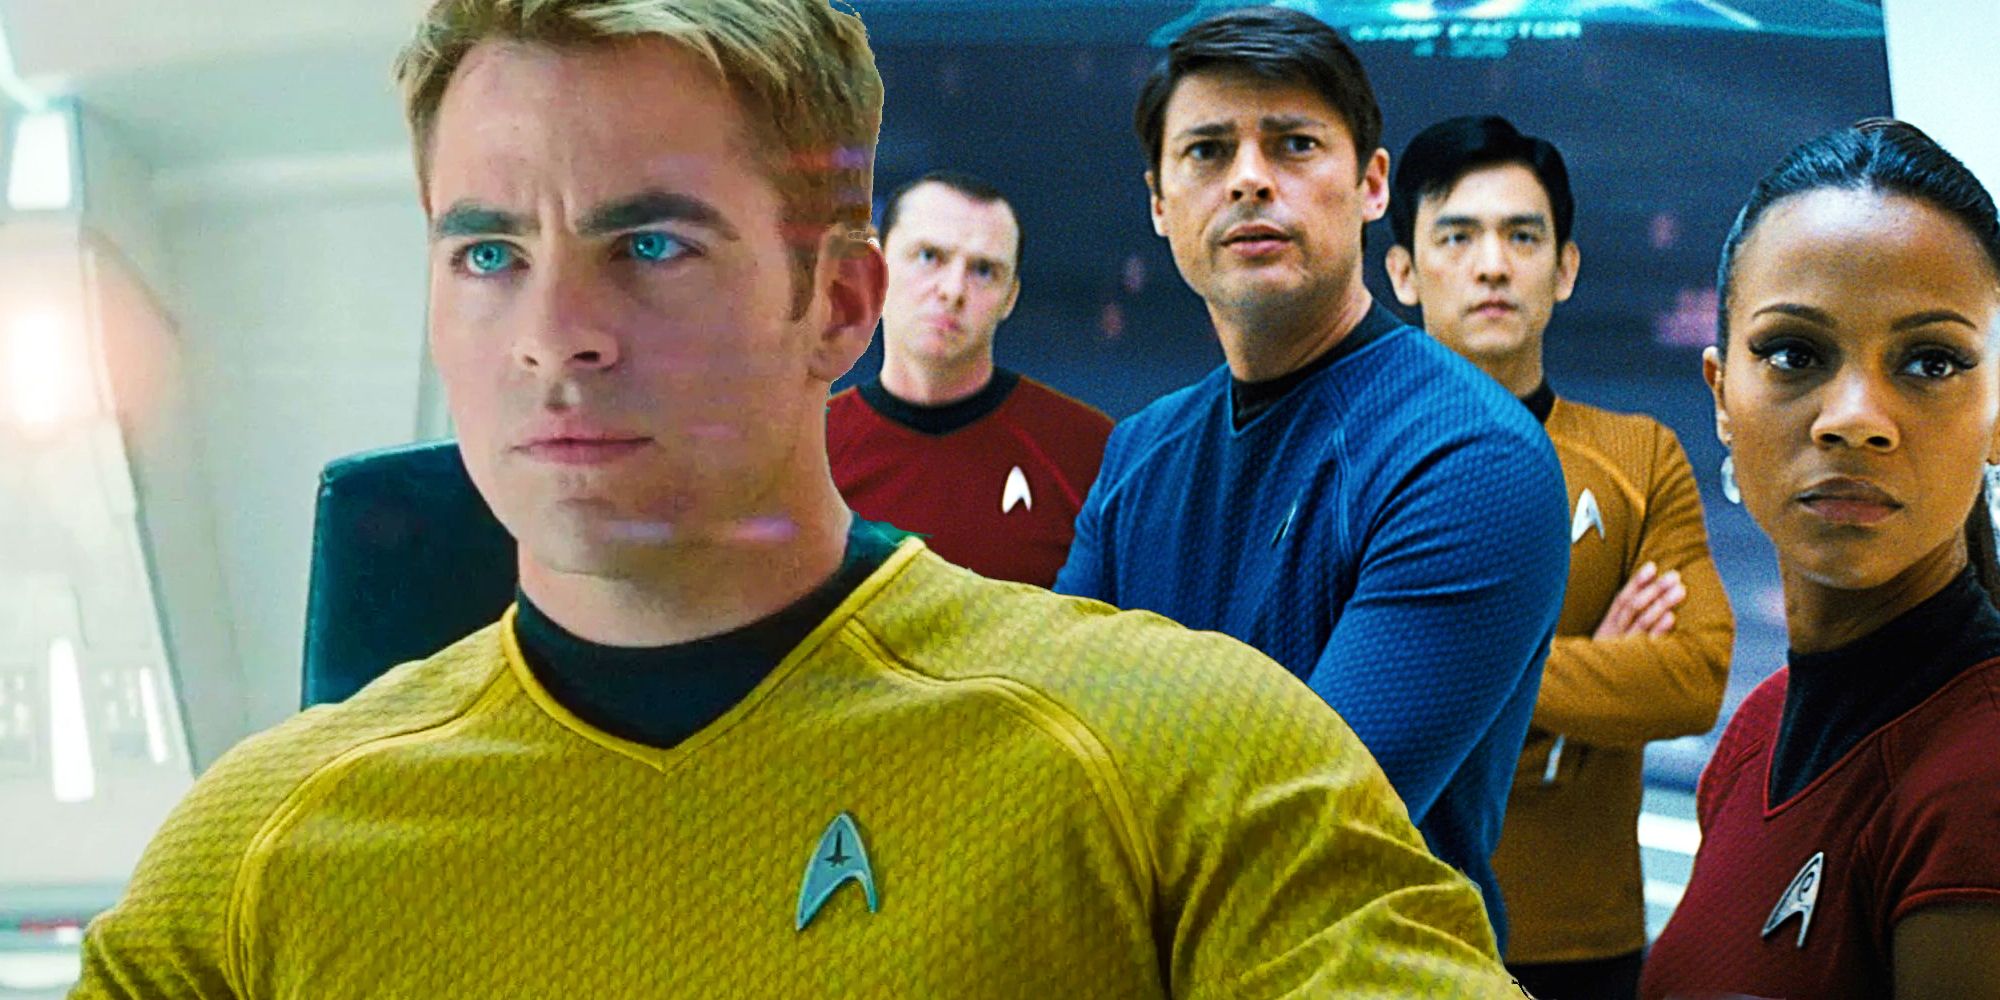 El reinicio de Star Trek de JJ Abrams "Empezar de nuevo fue brillante", dice el popular escritor de TNG y DS9